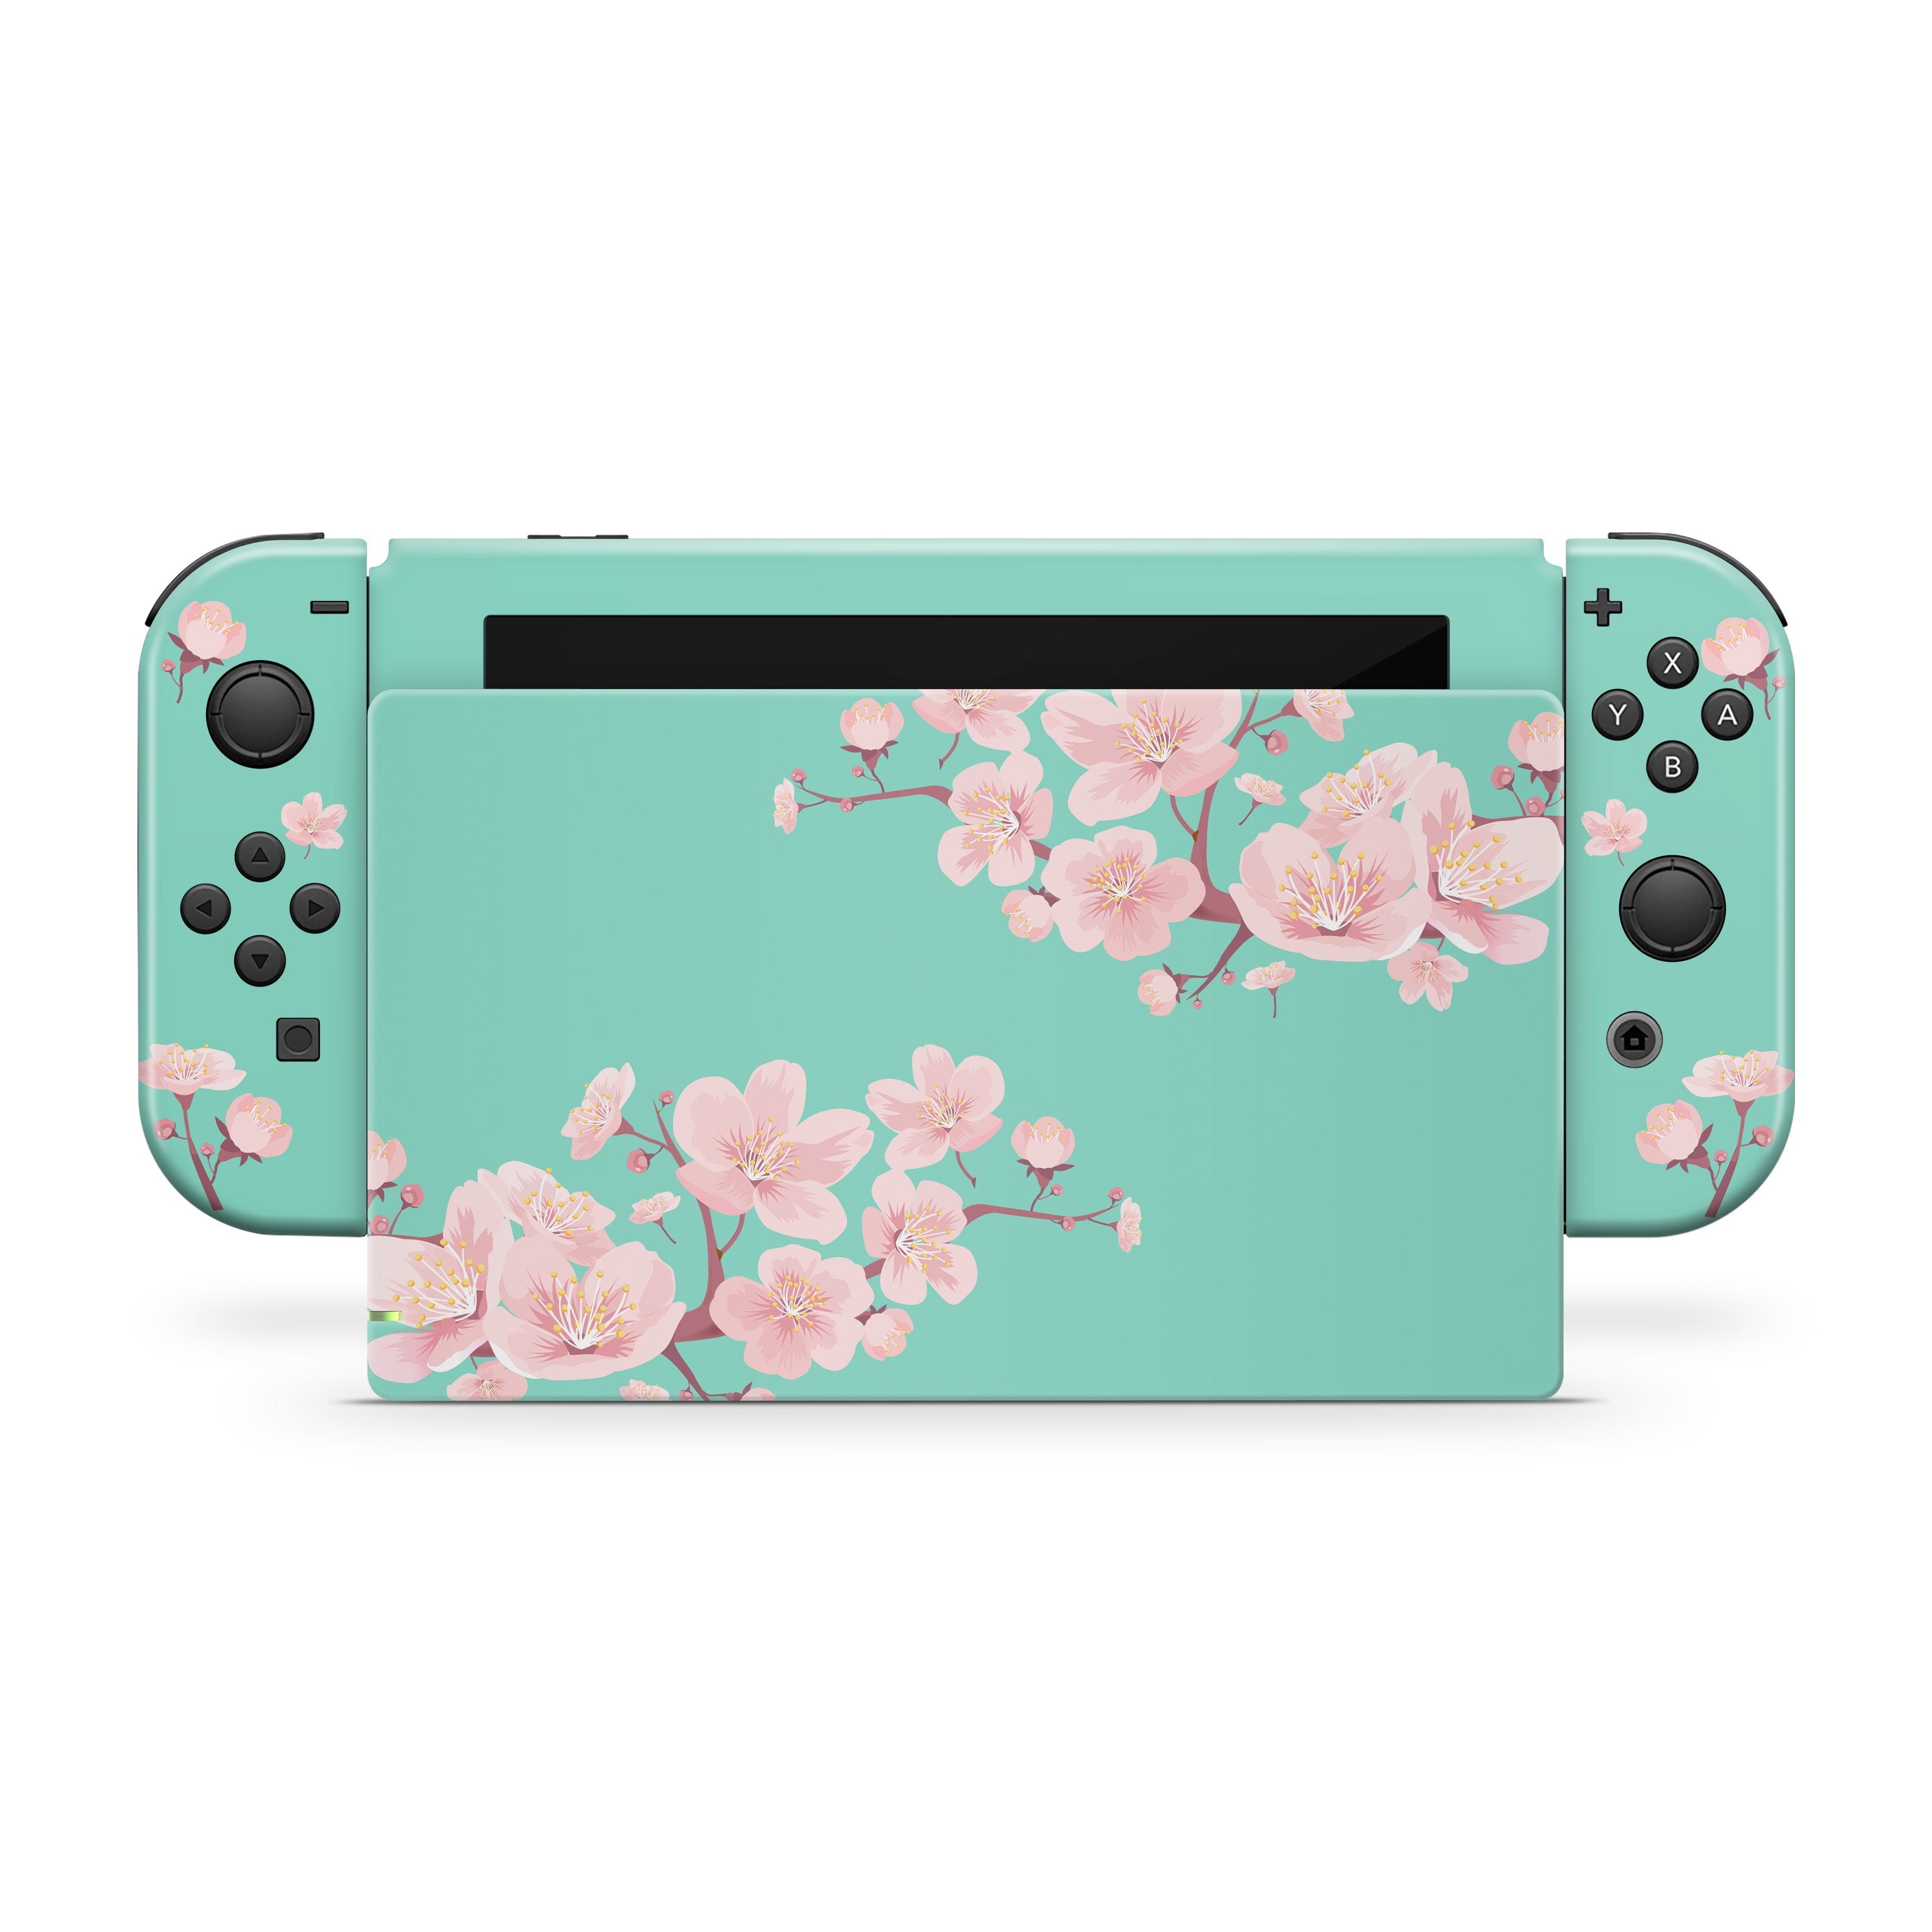 Nintendo switches skin Cherries, Flowers sakura switch skin Full cover decal vinyl 3m stickers